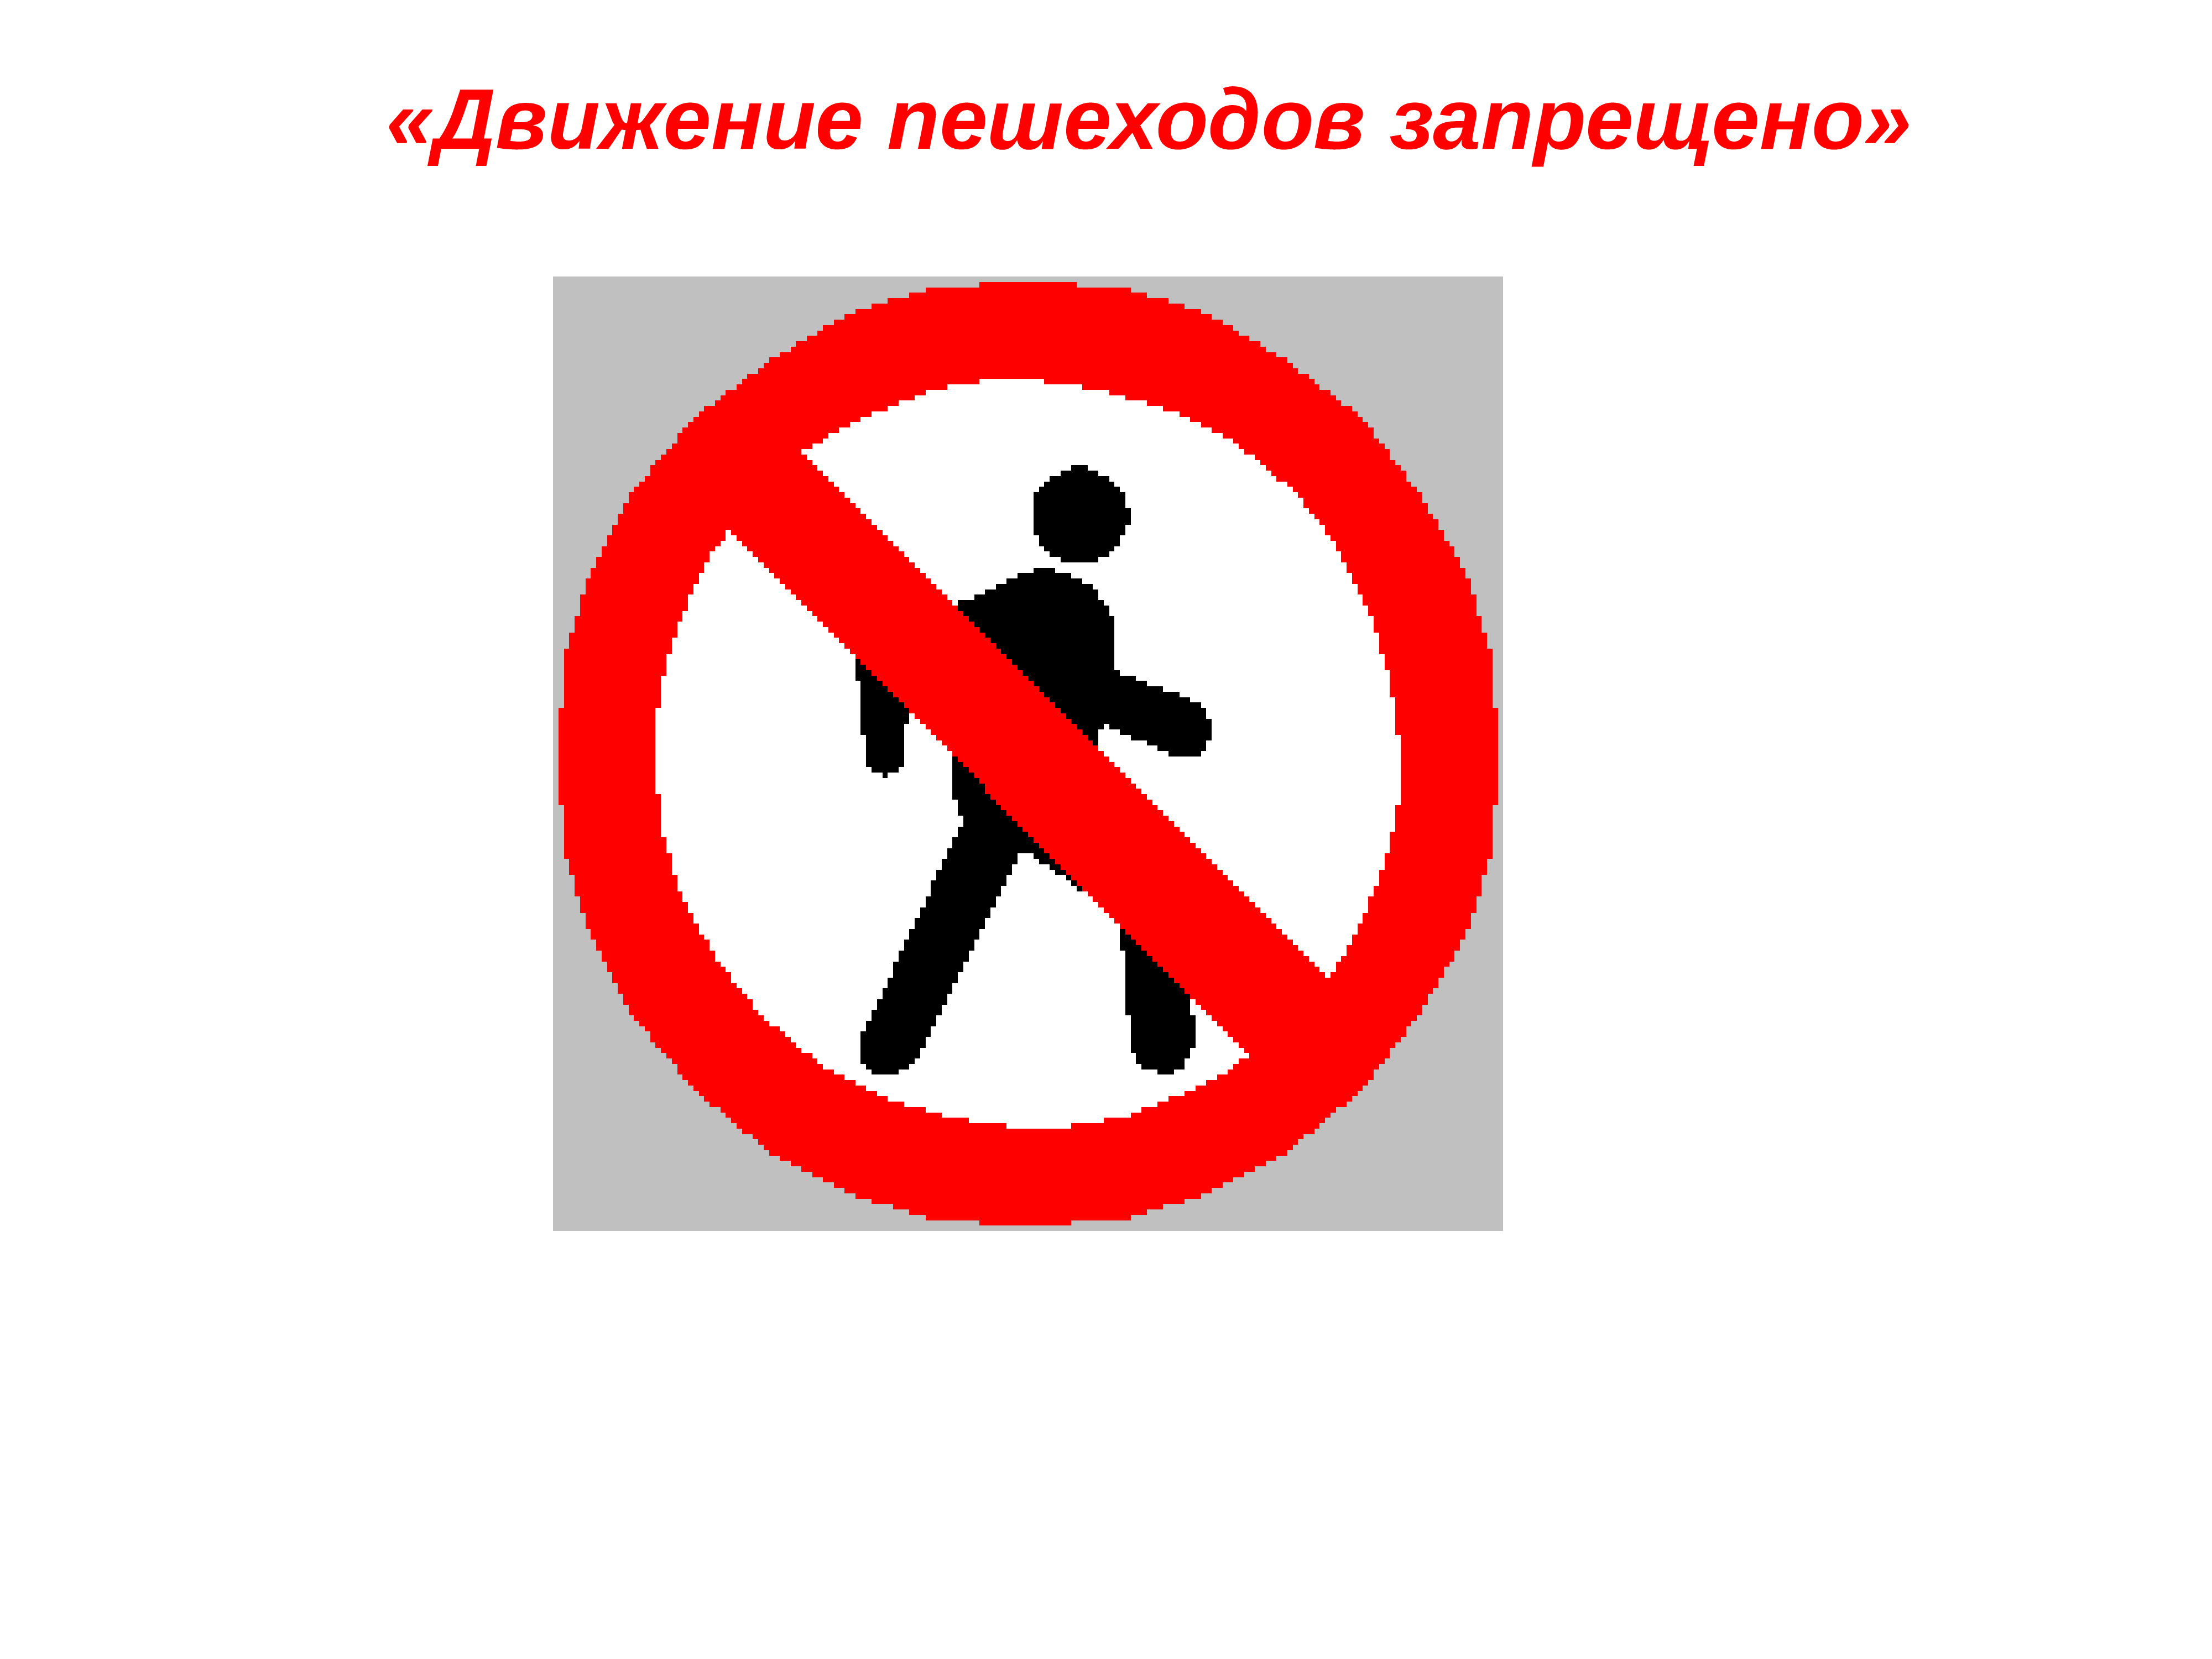 Дорожный запрещающий движение пешехода. Запрещающие знаки. Запрещающие дорожные знаки. Движение пешеходов запрещено. Знаки дорожного движения движение пешеходов запрещено.